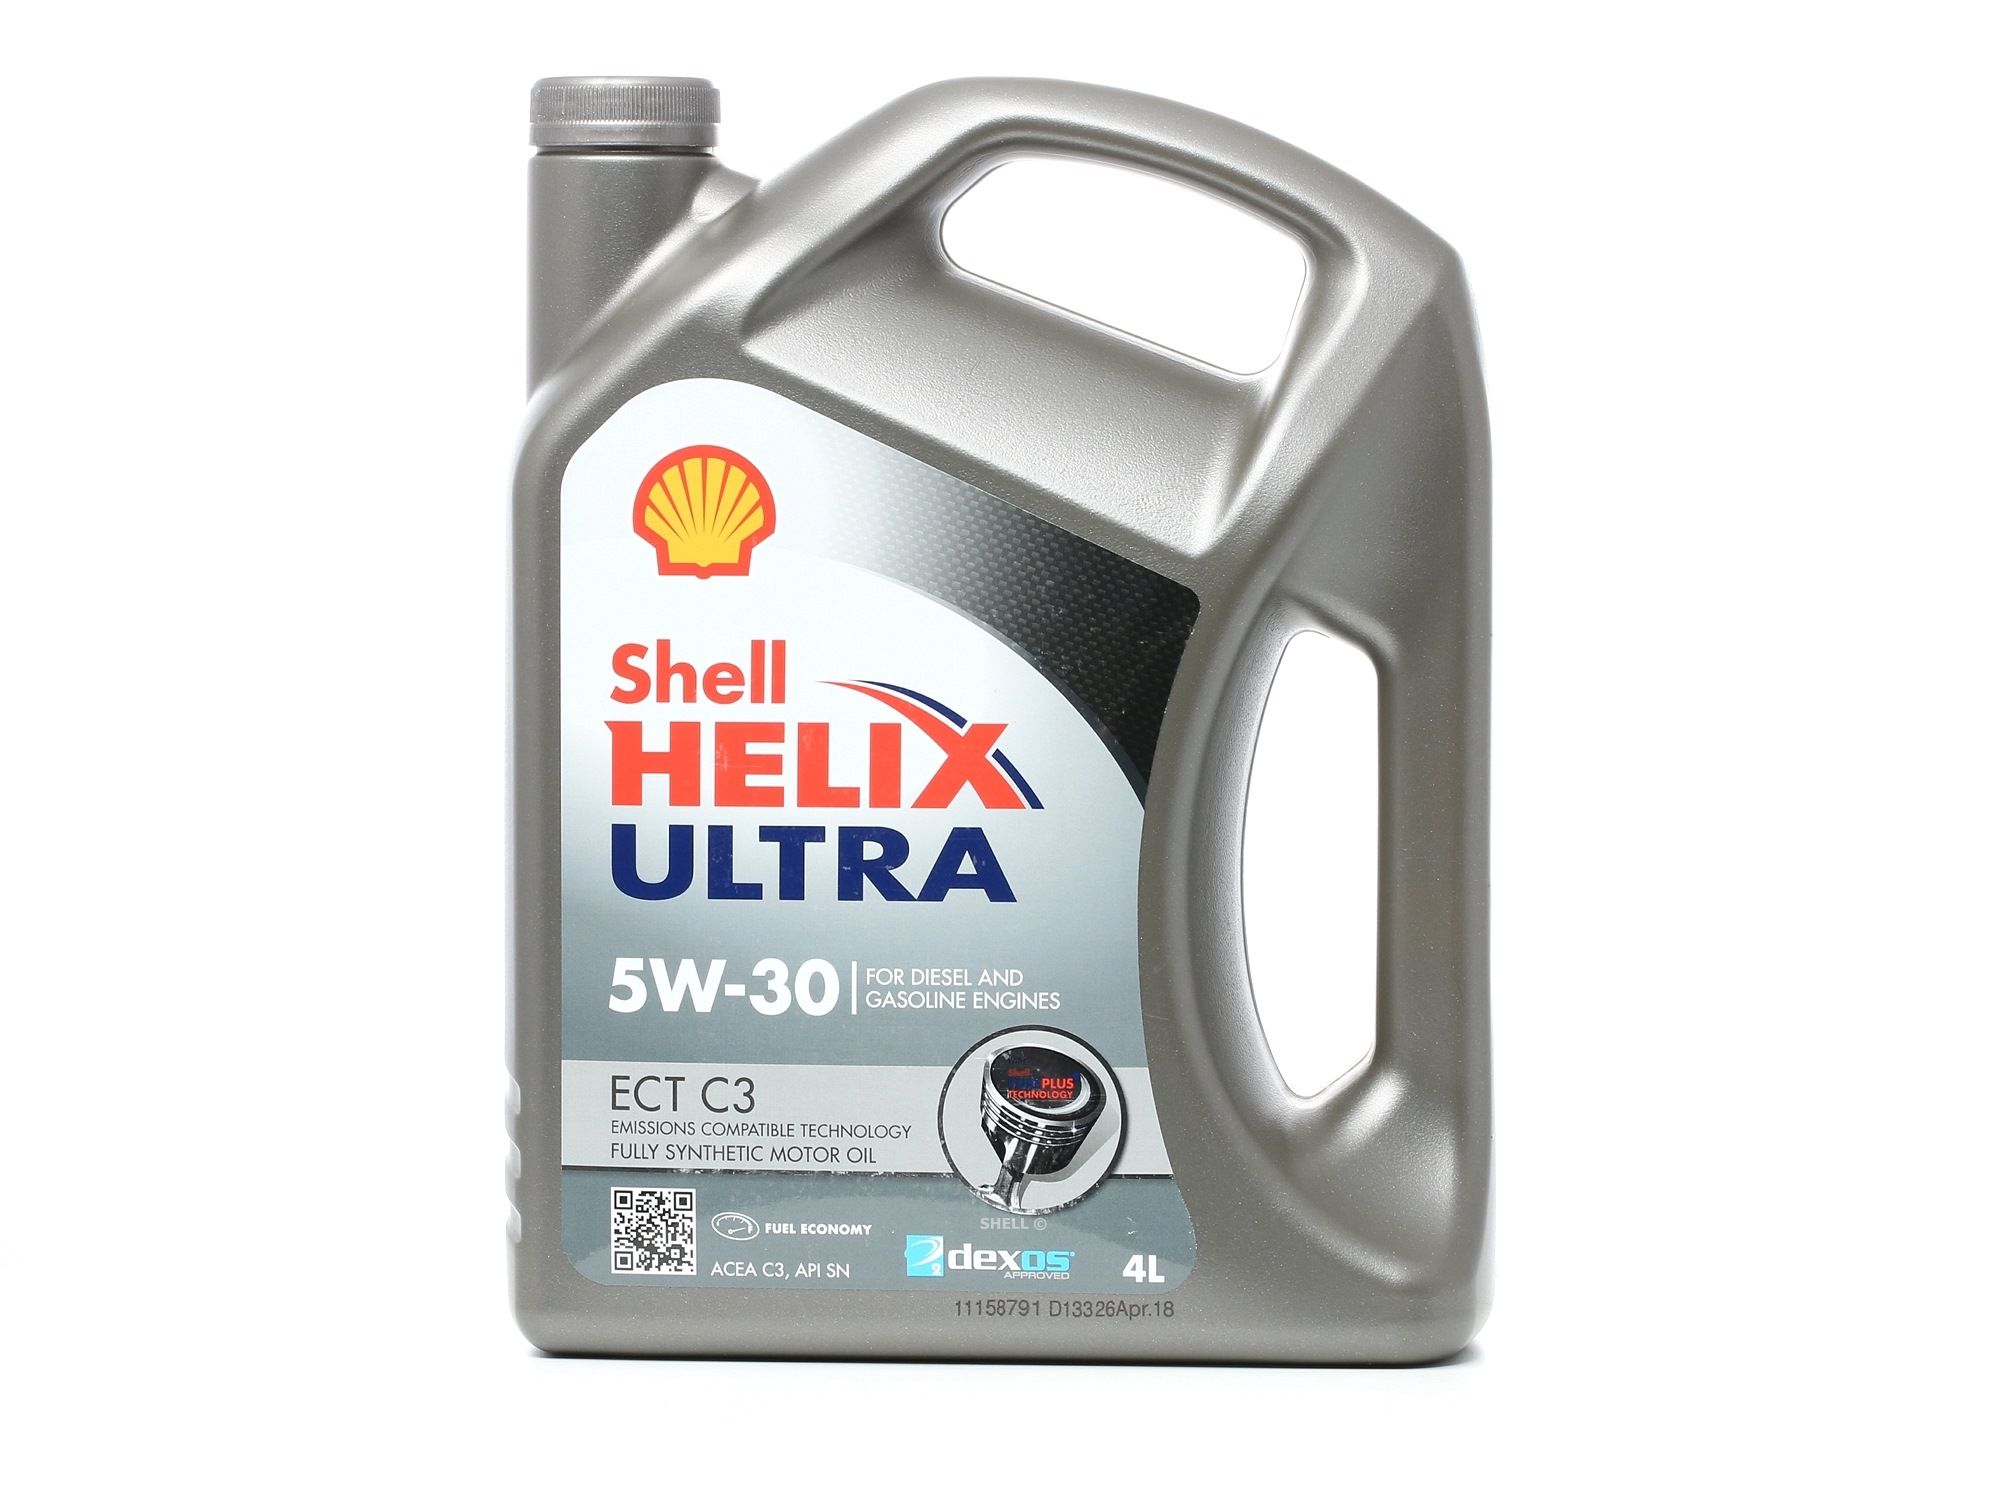 Kaufen Sie KFZ Motoröl SHELL 550042826 Helix, Ultra ECT C3 5W-30, 4l